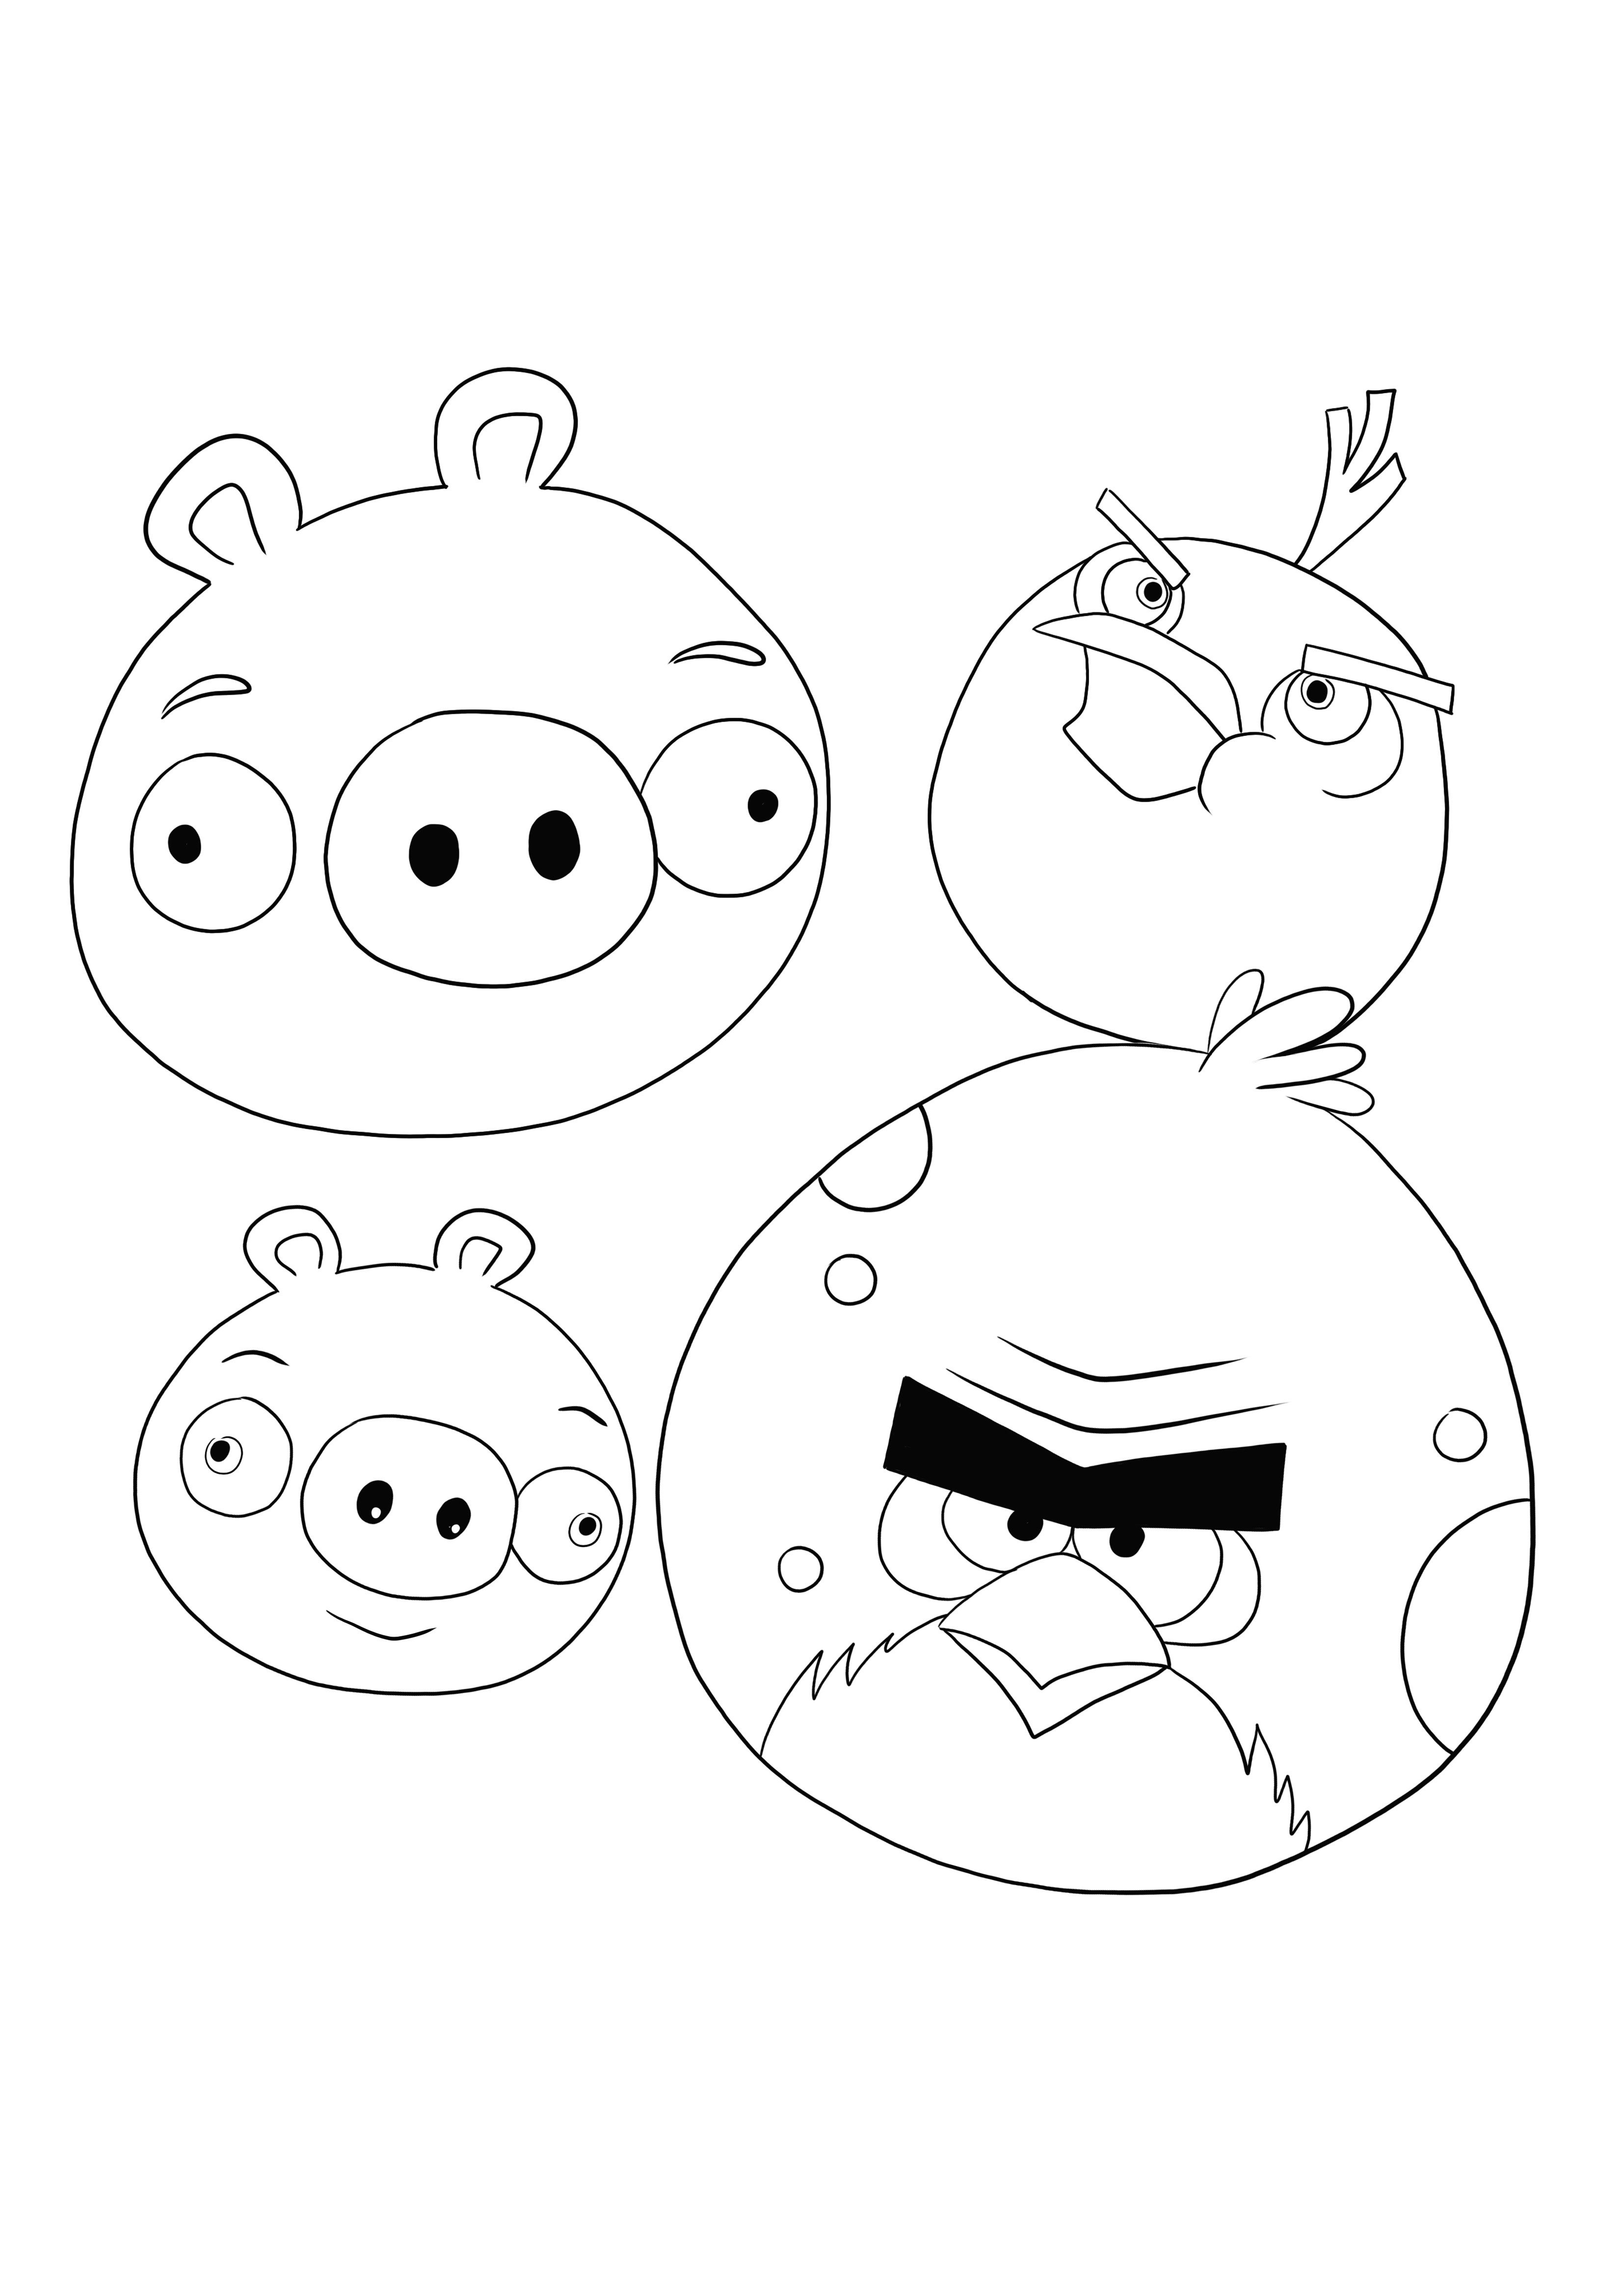 Folha de colorir Angry Birds grátis para baixar e fácil de colorir por crianças